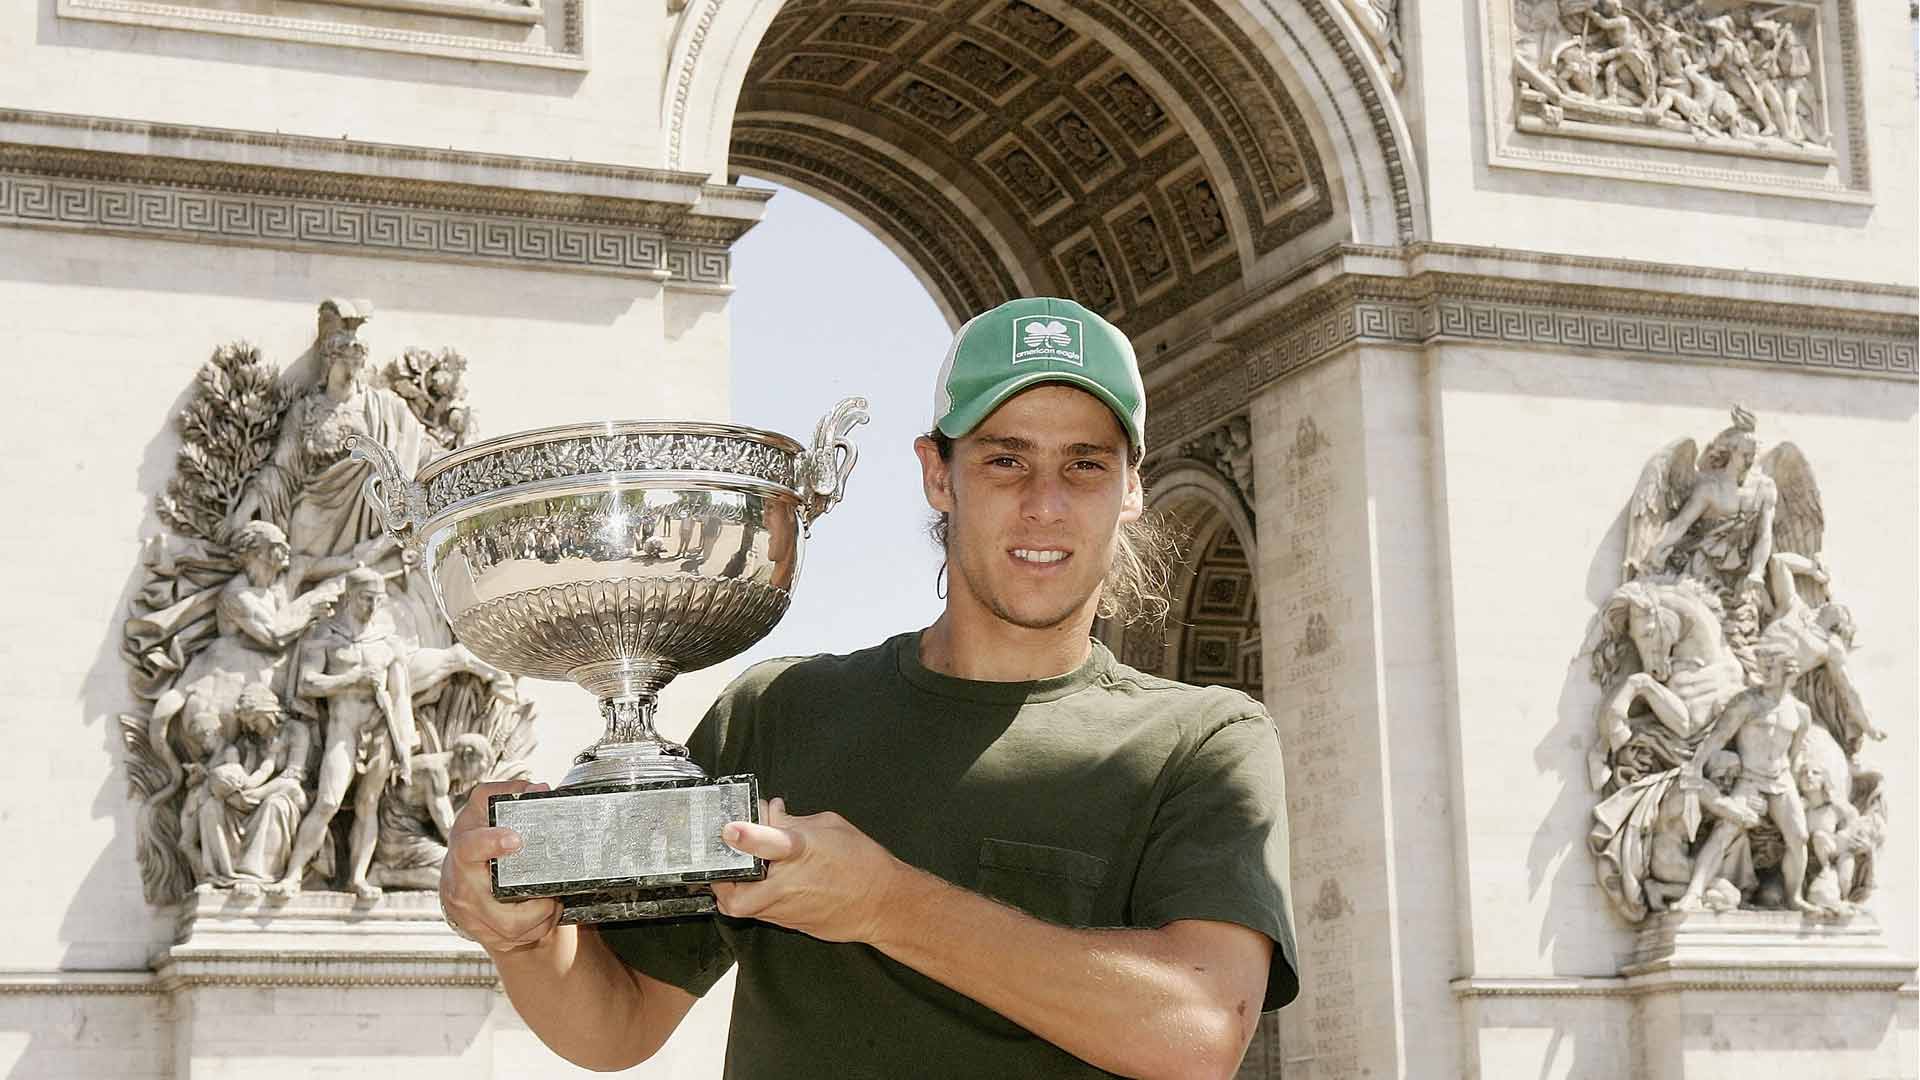 Gaston Gaudio's 2004 Roland Garros triumph, 20 years on